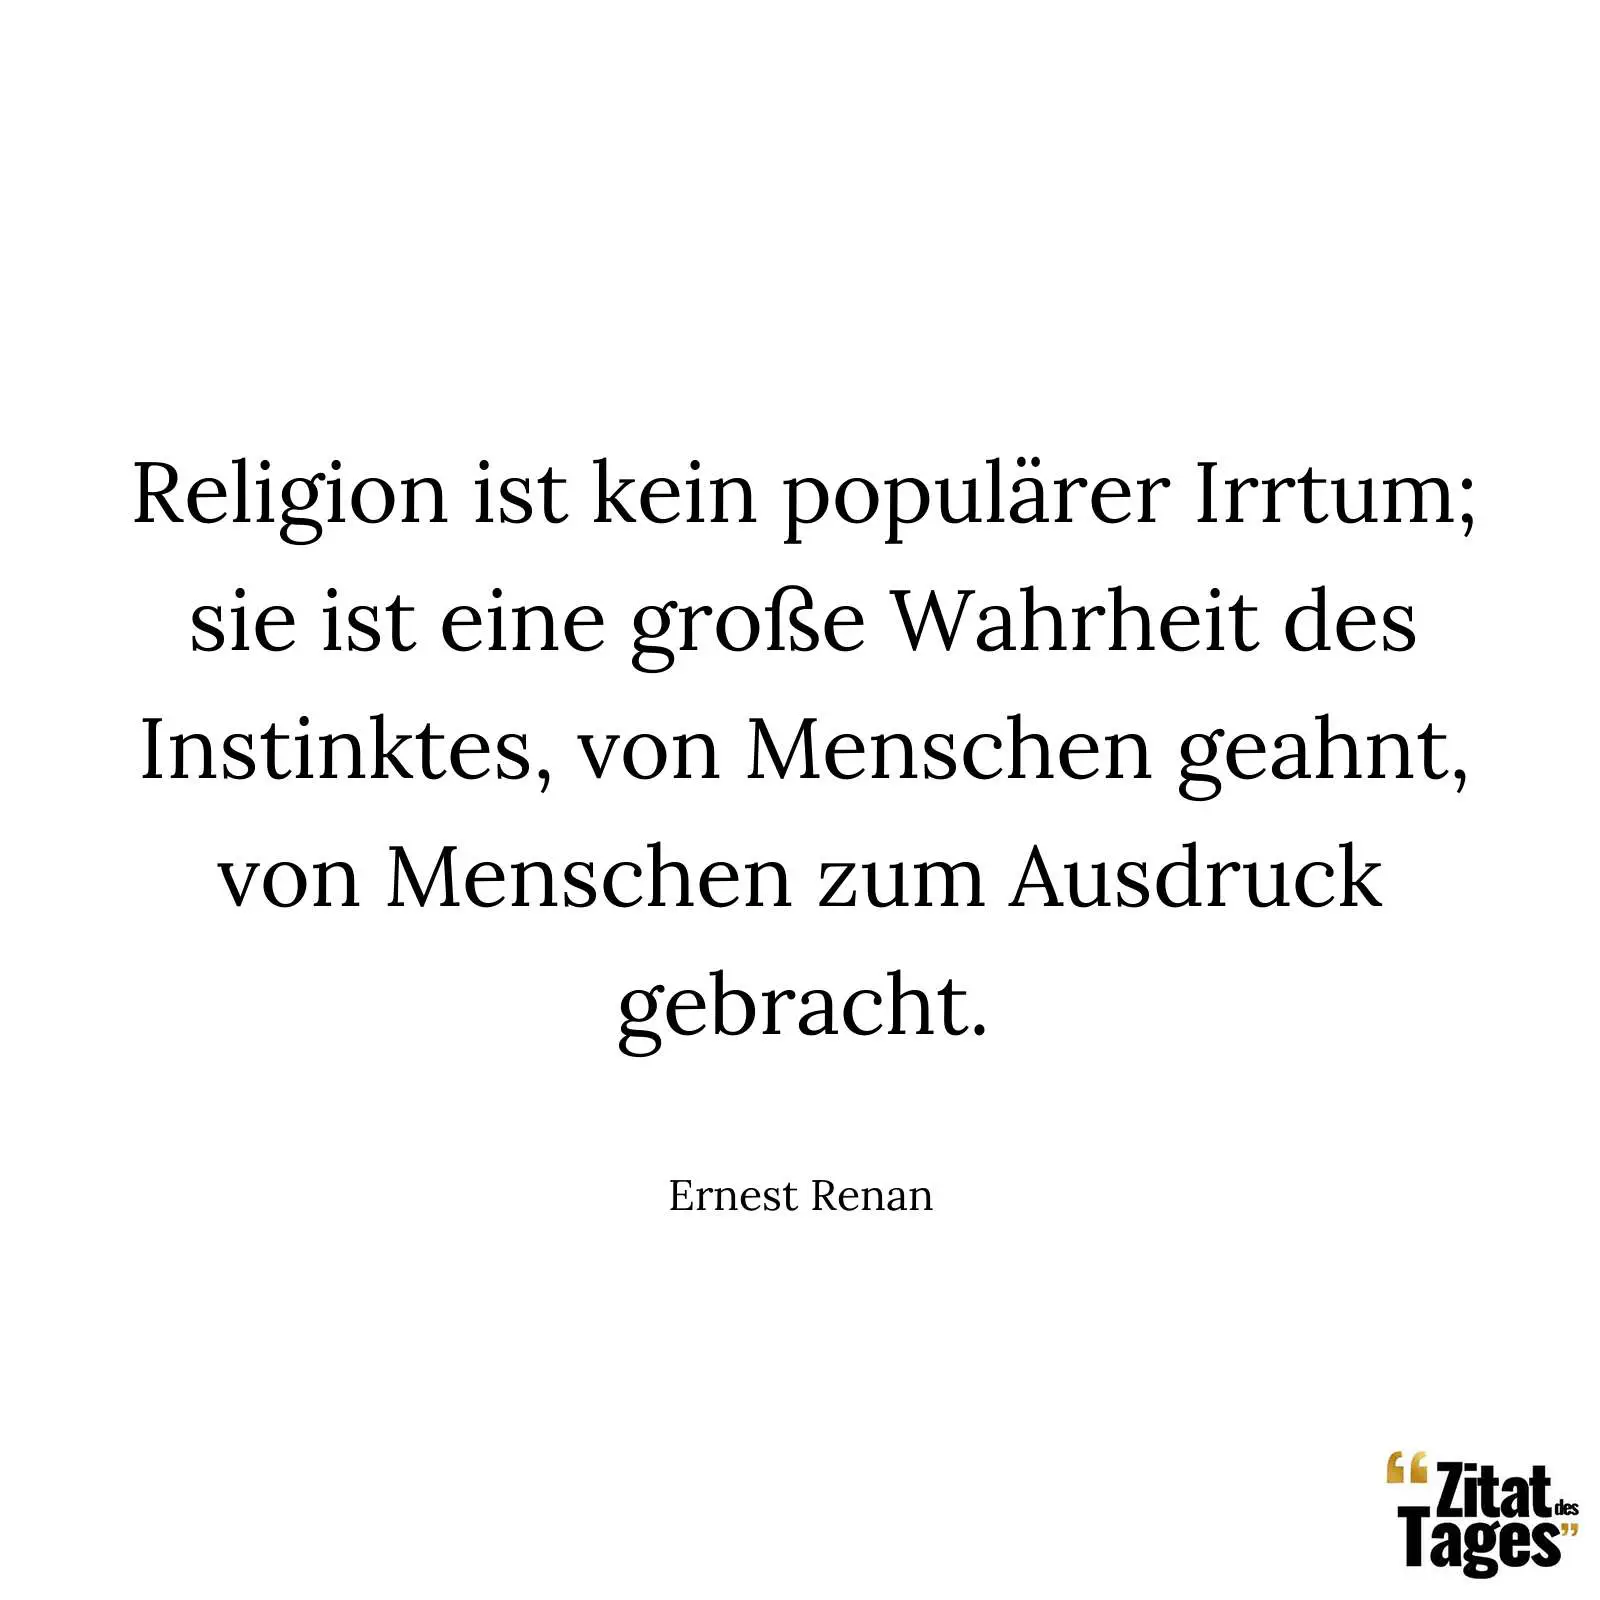 Religion ist kein populärer Irrtum; sie ist eine große Wahrheit des Instinktes, von Menschen geahnt, von Menschen zum Ausdruck gebracht. - Ernest Renan